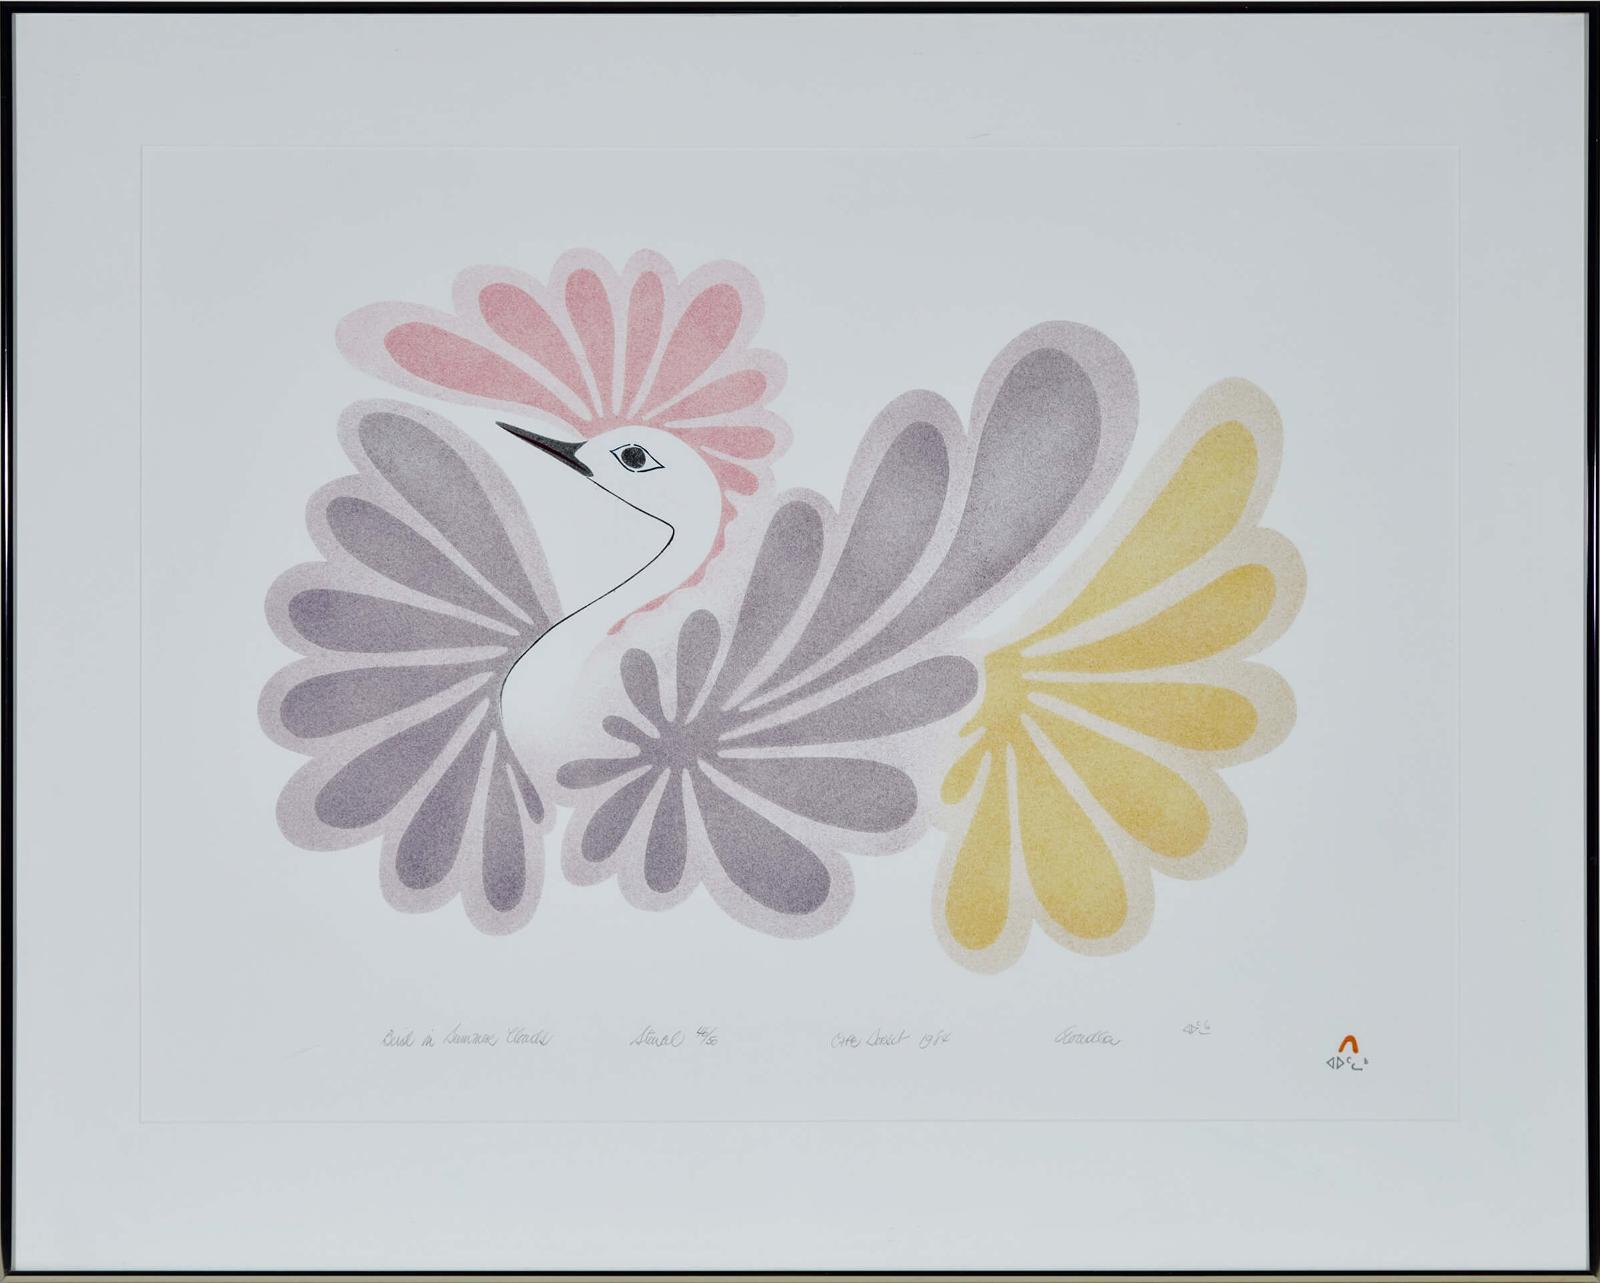 Aoudla Pudlat (1951-2006) - Bird In Summer Clouds; Bird In Winter Clouds